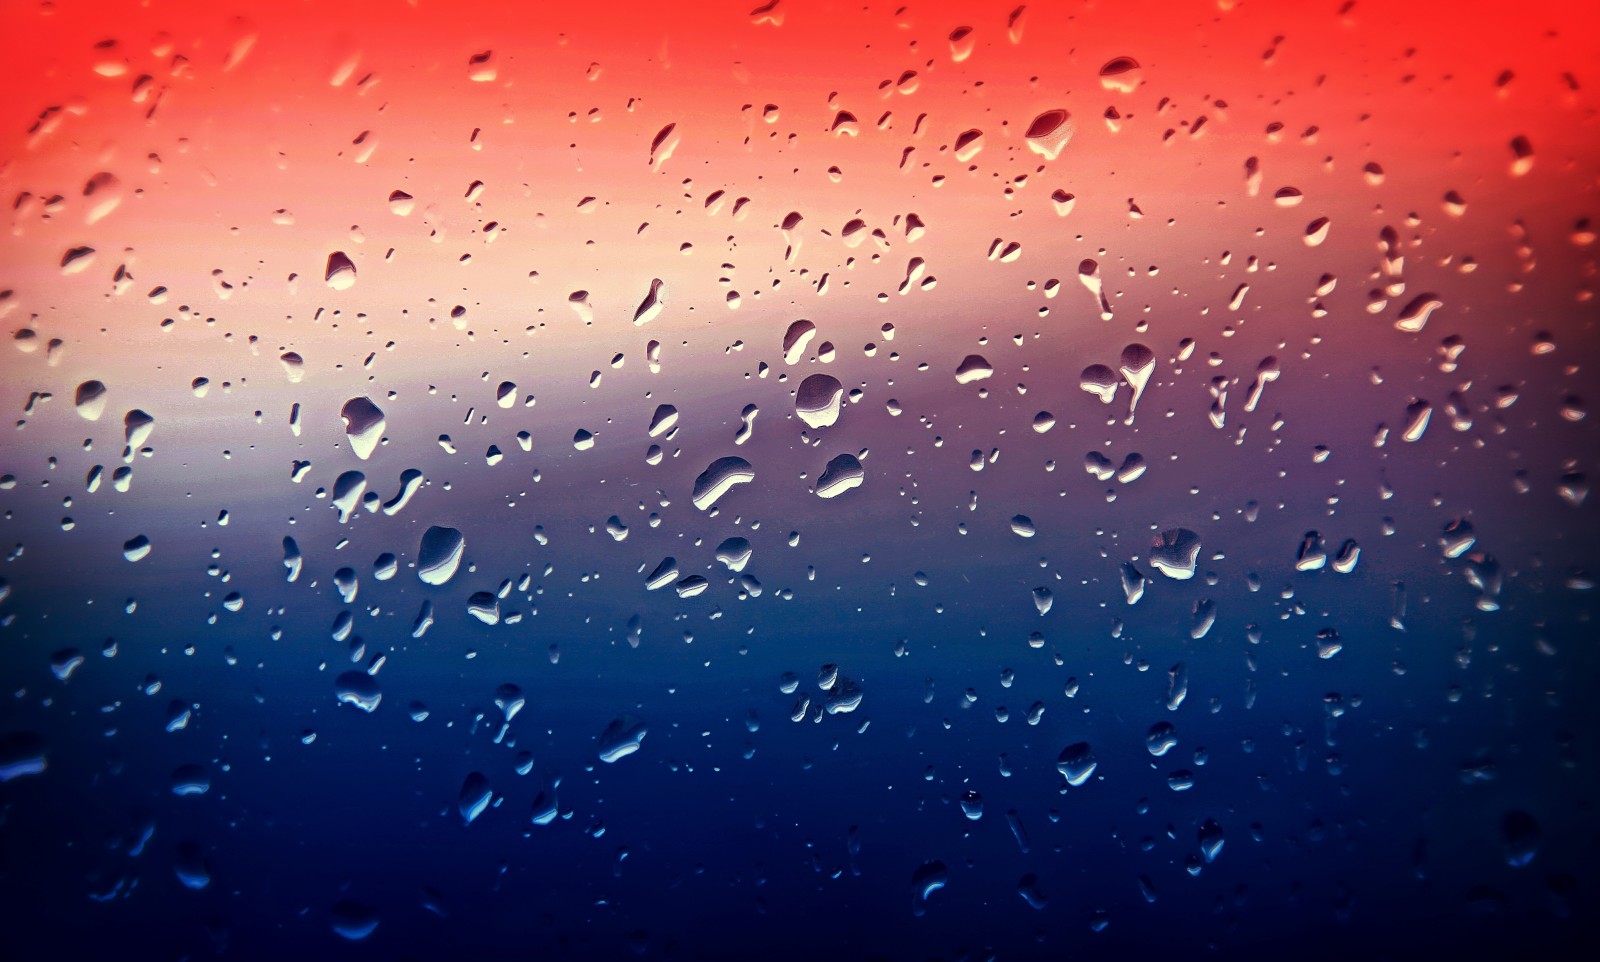 cốc thủy tinh, hình chụp, mưa, giọt, màu sắc, nhiếp ảnh gia, Alessandro Di Cicco